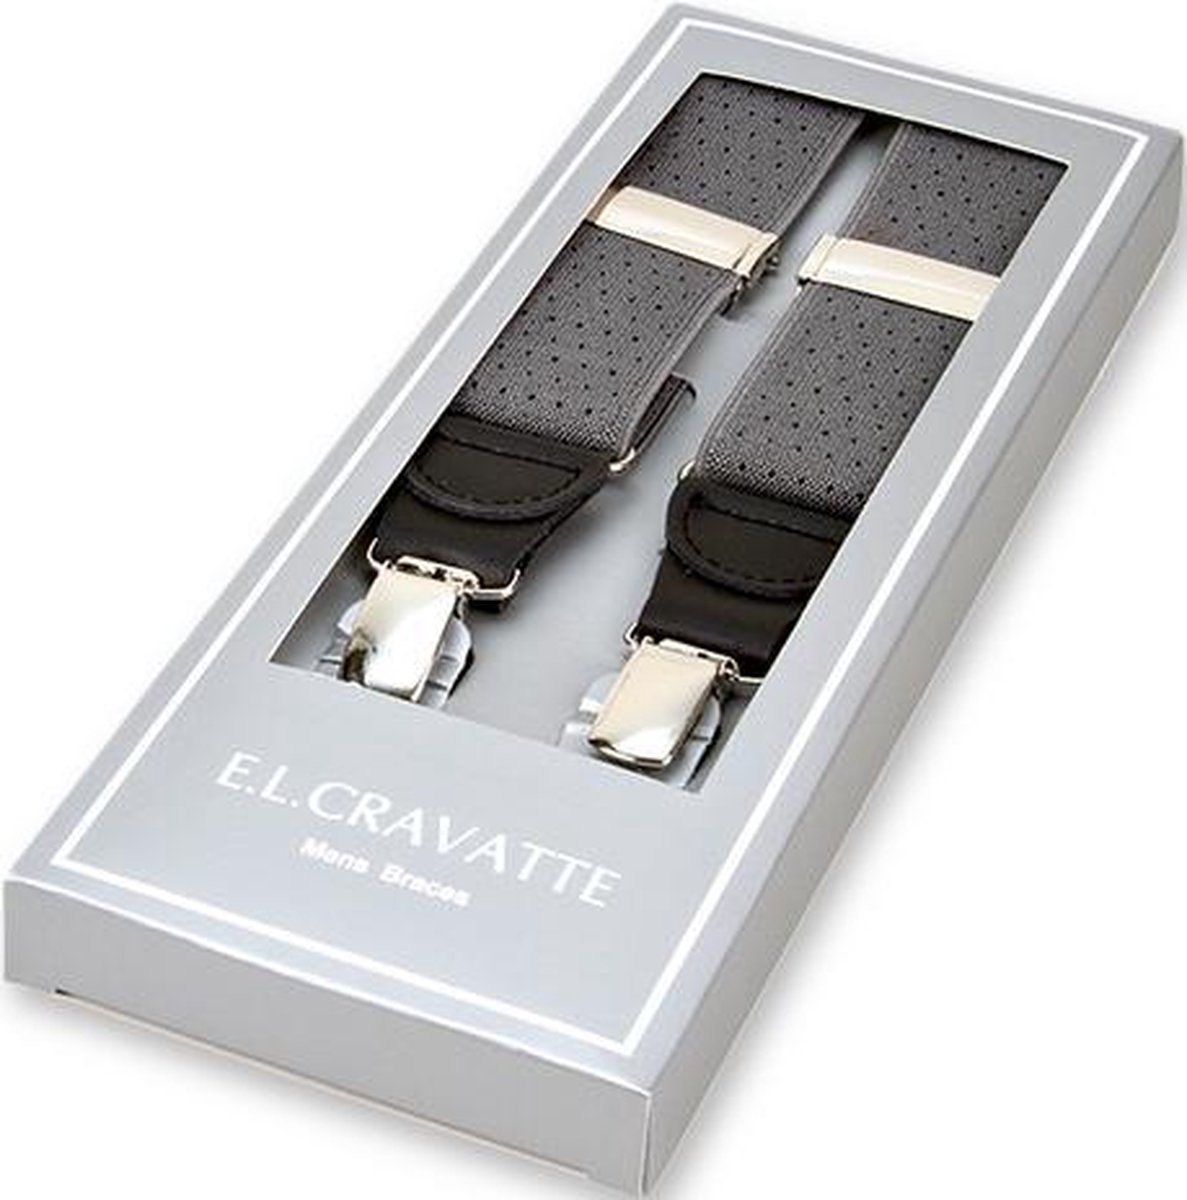 E.L. Cravatte Bretels - Grijs met zwarte stippen - Met écht leer - E.L. Cravatte